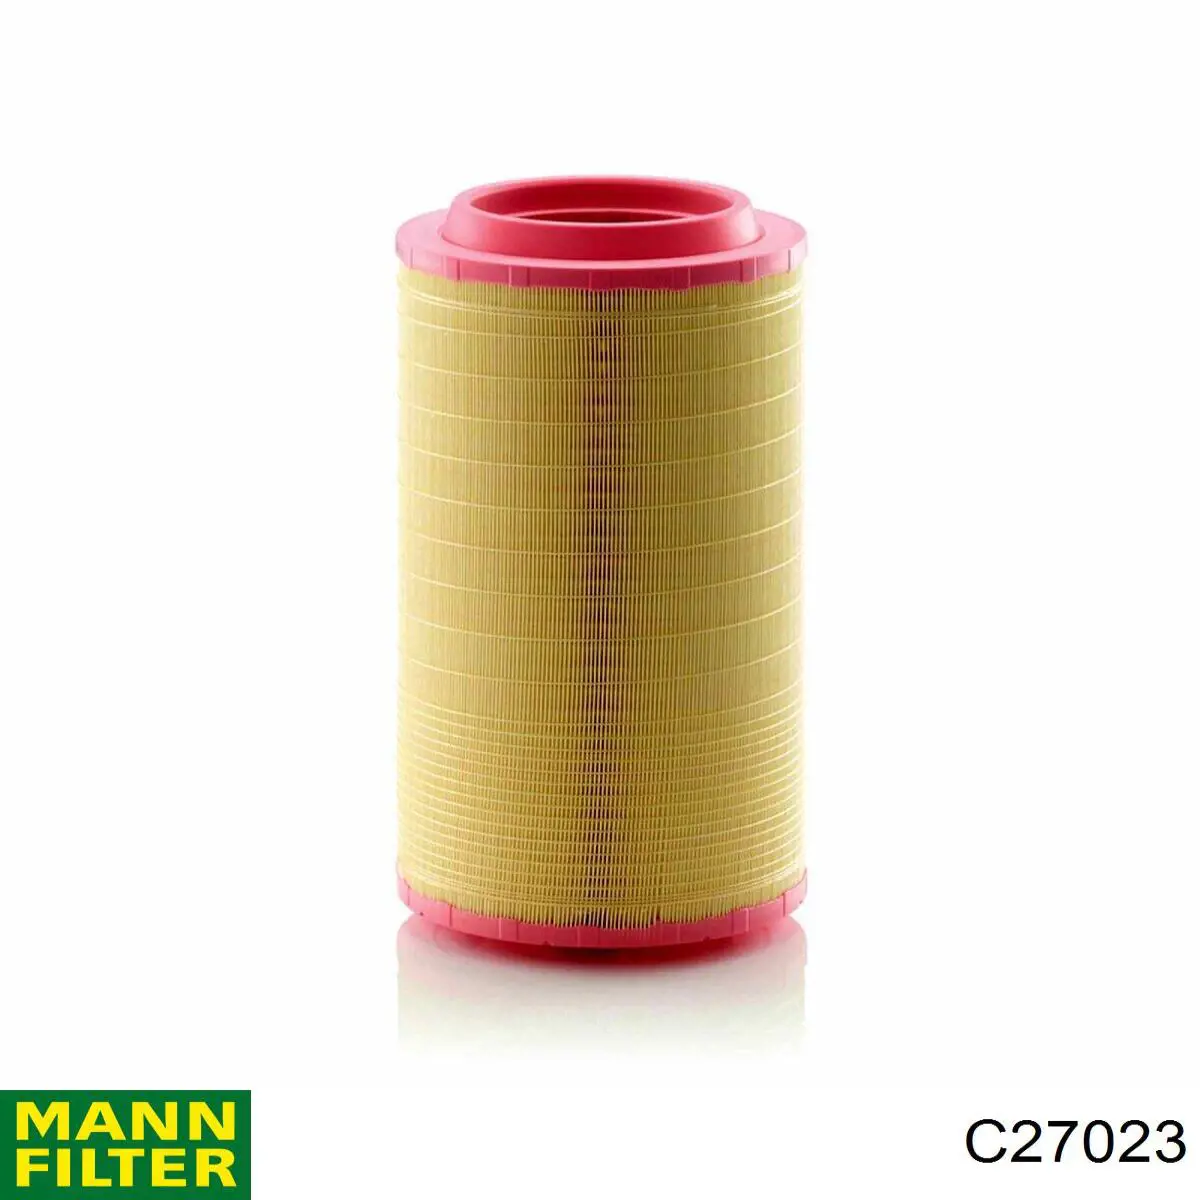 Filtro de aire C27023 Mann-Filter